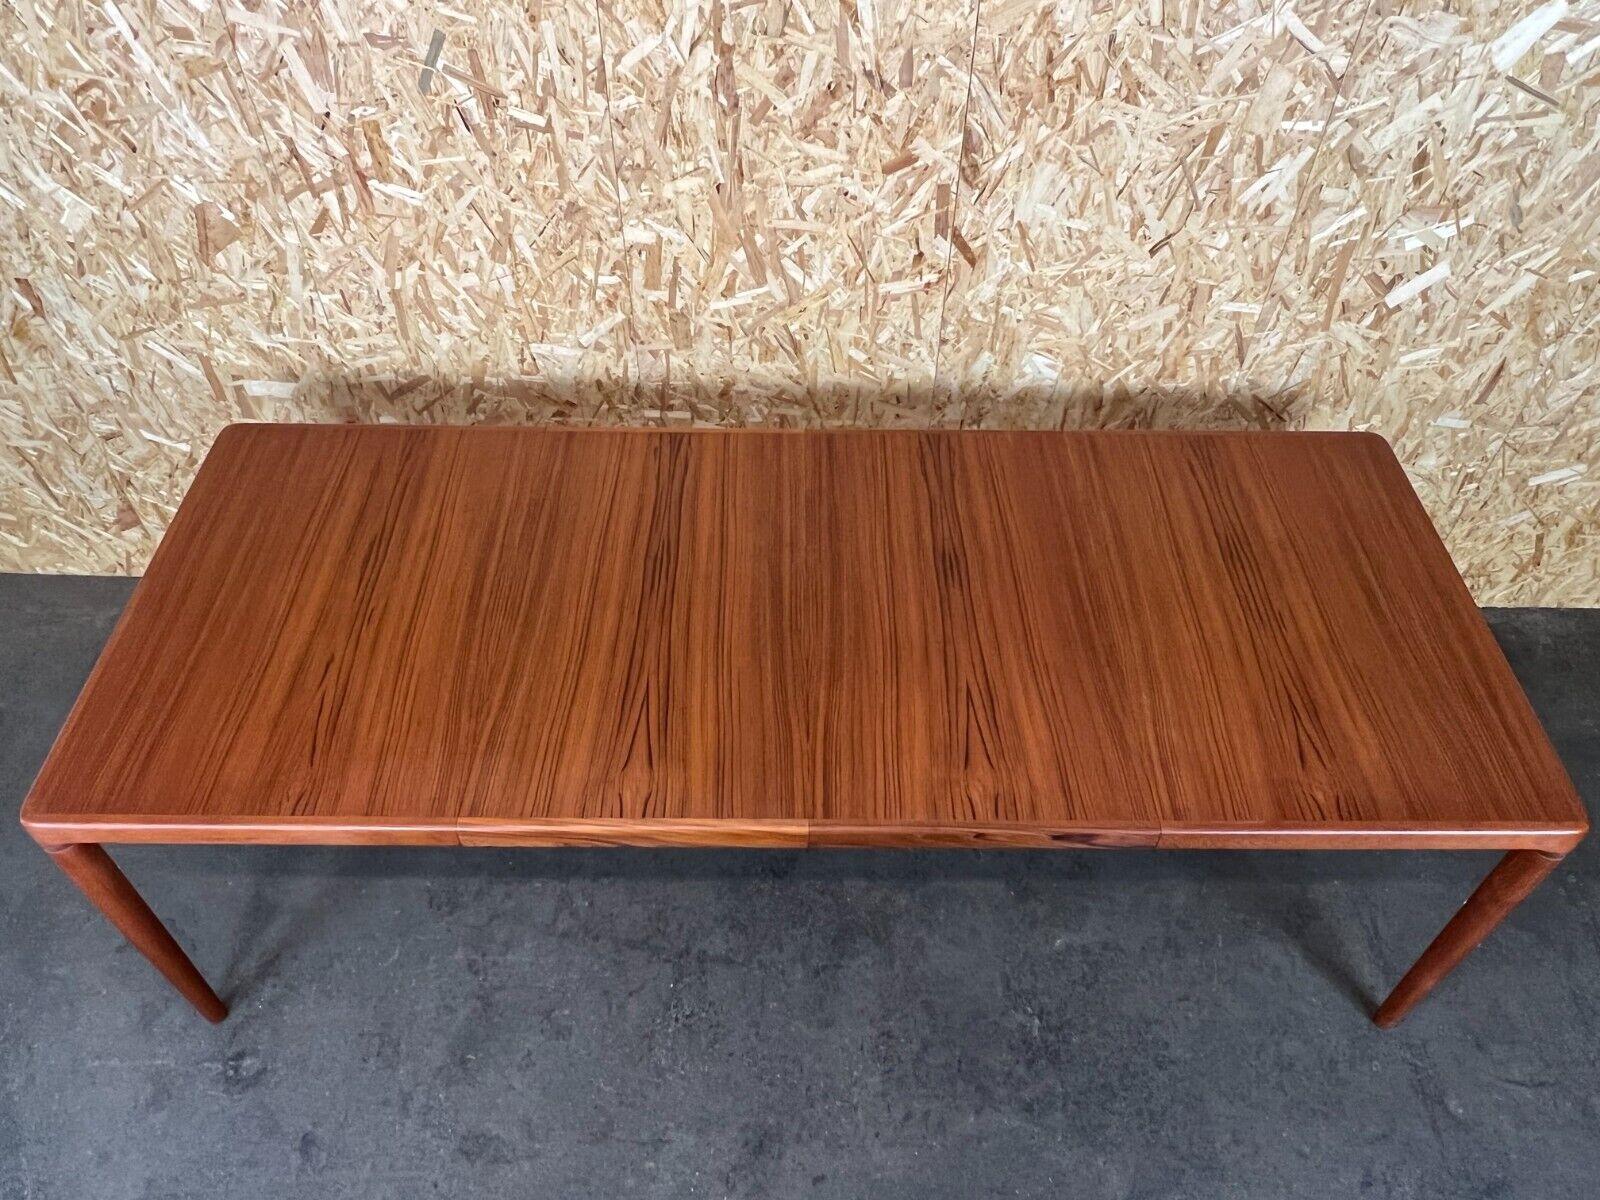 60s 70s Teak Dining Table Danish Modern Design Denmark 60s 70s For Sale 3